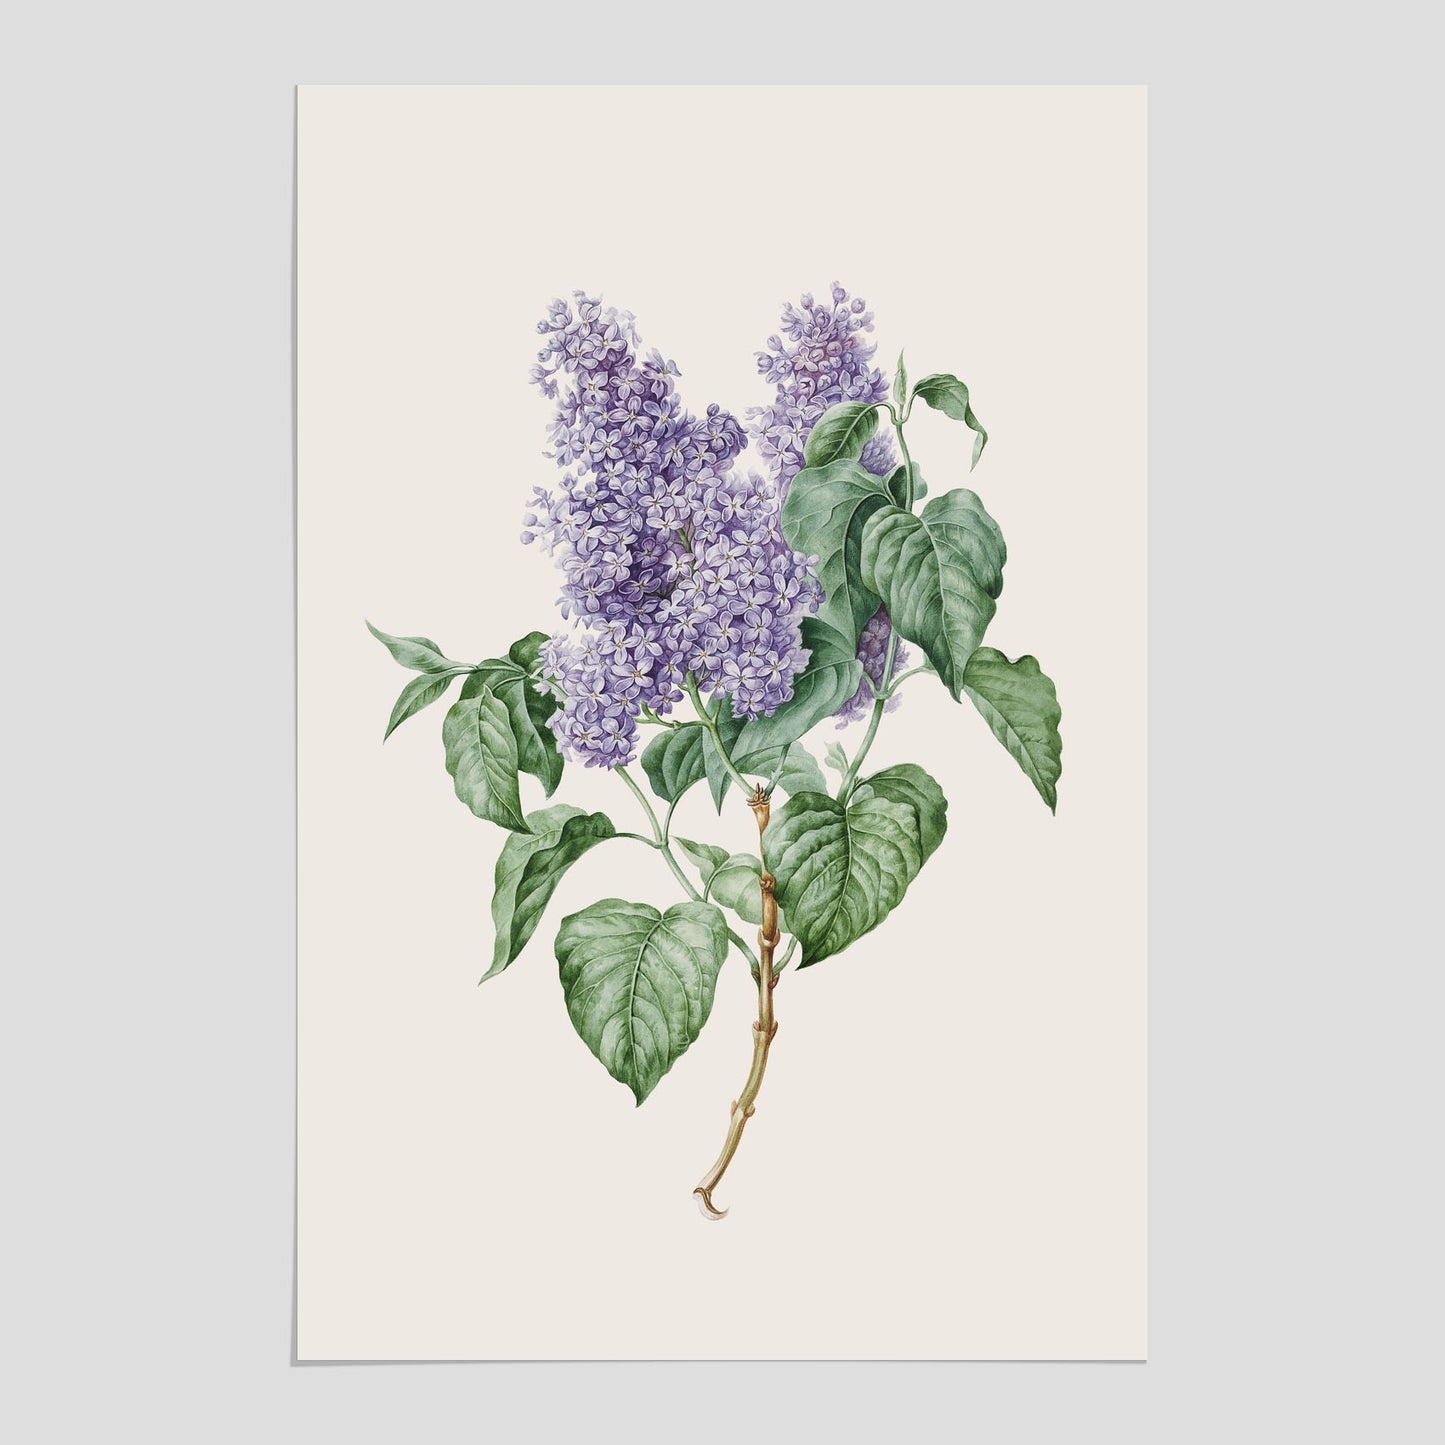 Poster av en lila syren, ritad av konstnären Maria Geertruida Barbiers-Snabilié